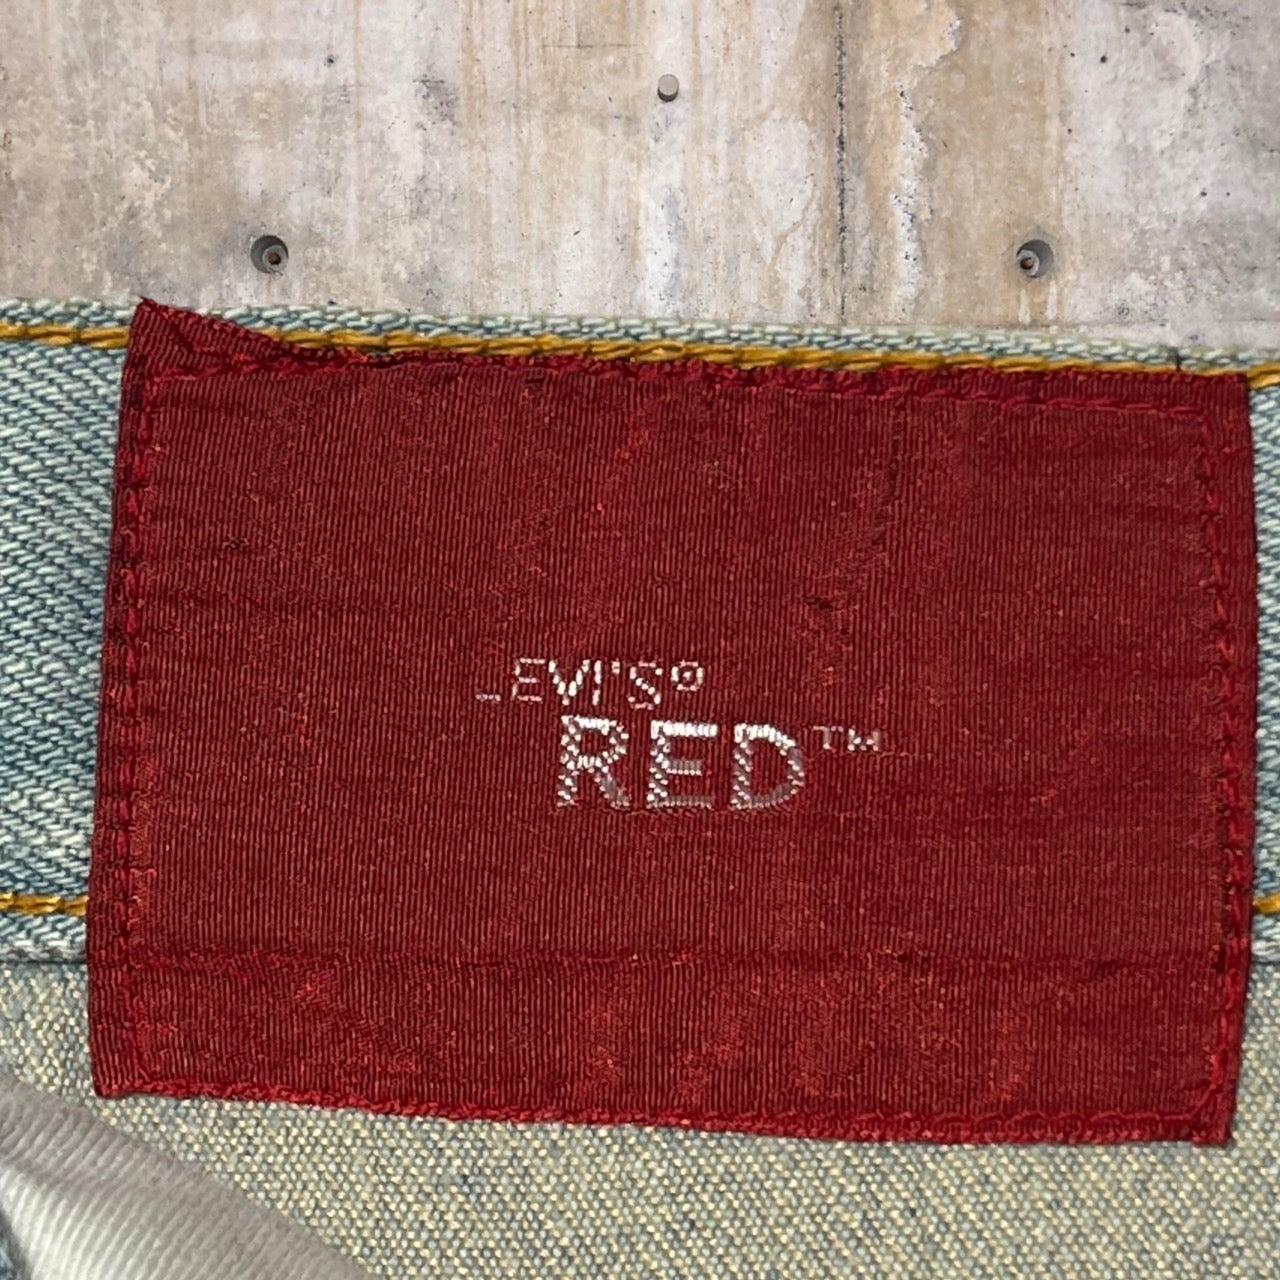 Levi's RED(リーバイスレッド) 00's立体裁断デニムパンツ 26×30 ブルー